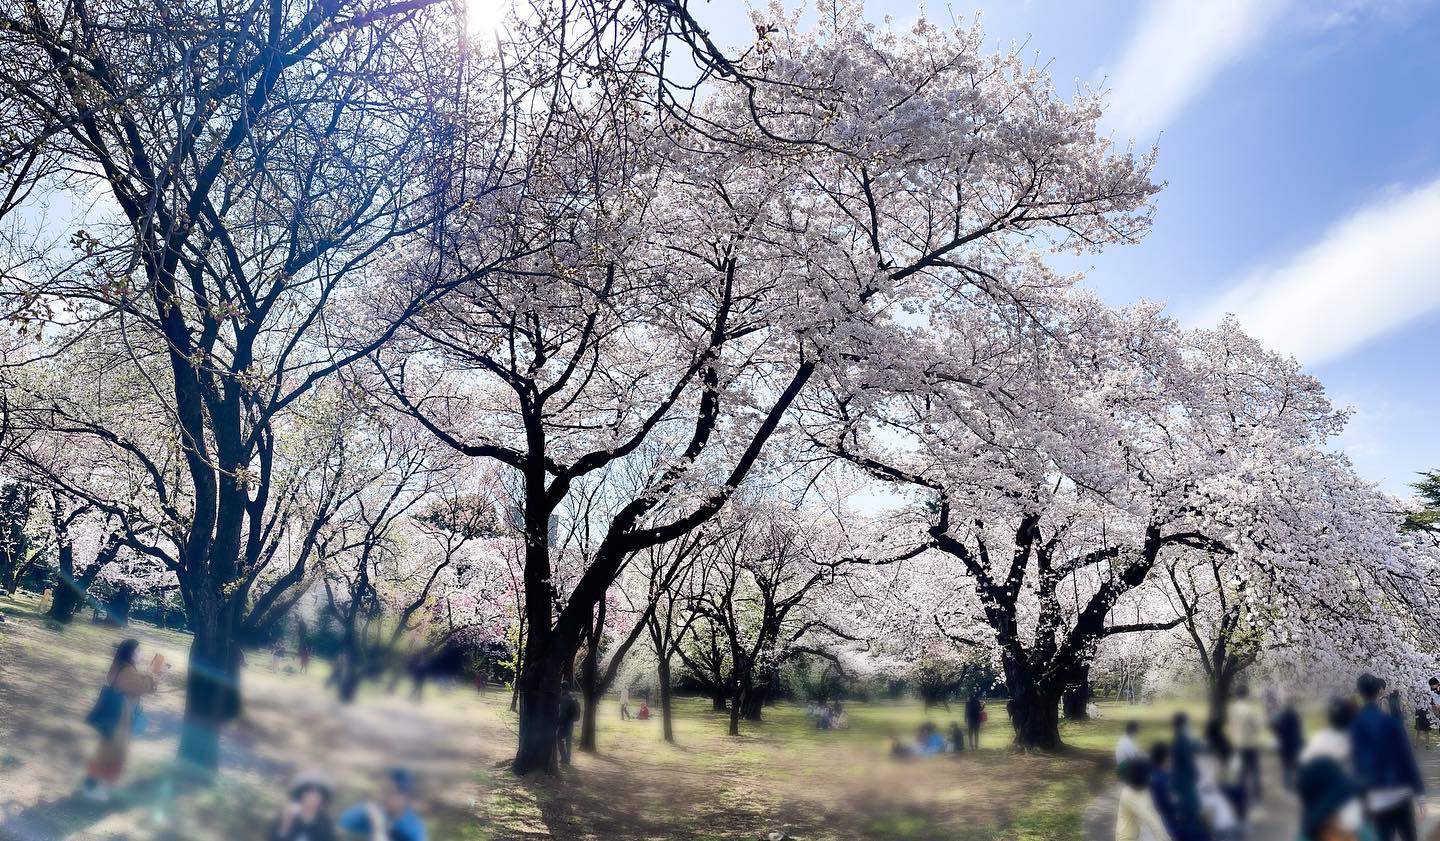 ・両親と兄家族とみんなでお花見ピクニックお天気最高で桜満開で幸せな1日だった